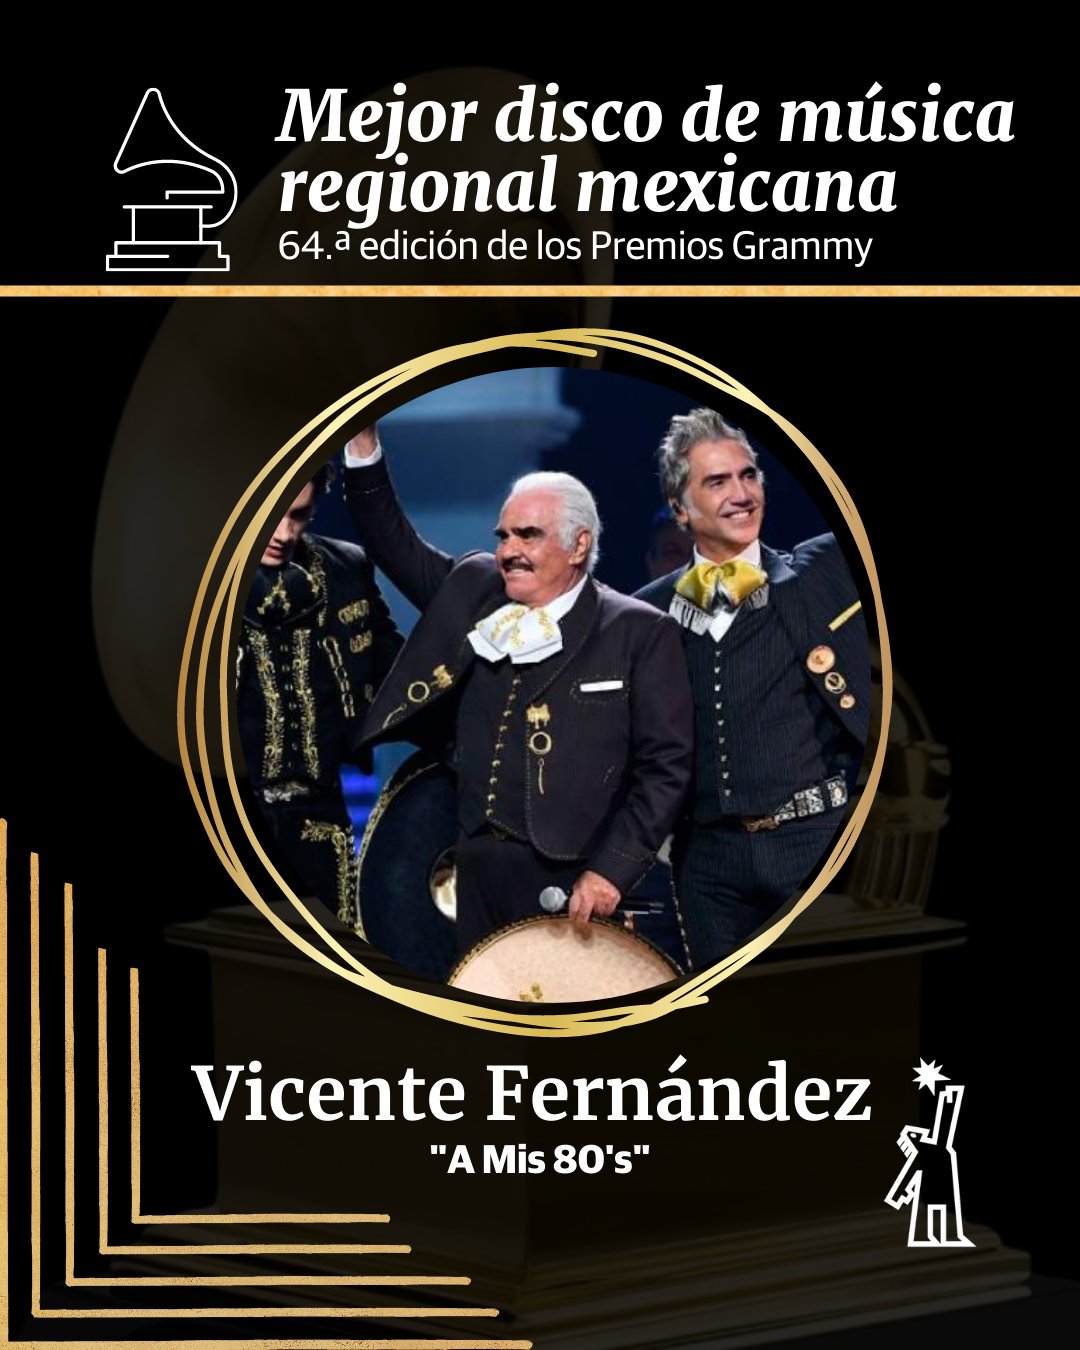 Vicente Fernández ganó un Grammy de manera póstuma Foto: Twitter/@RecordingAcad